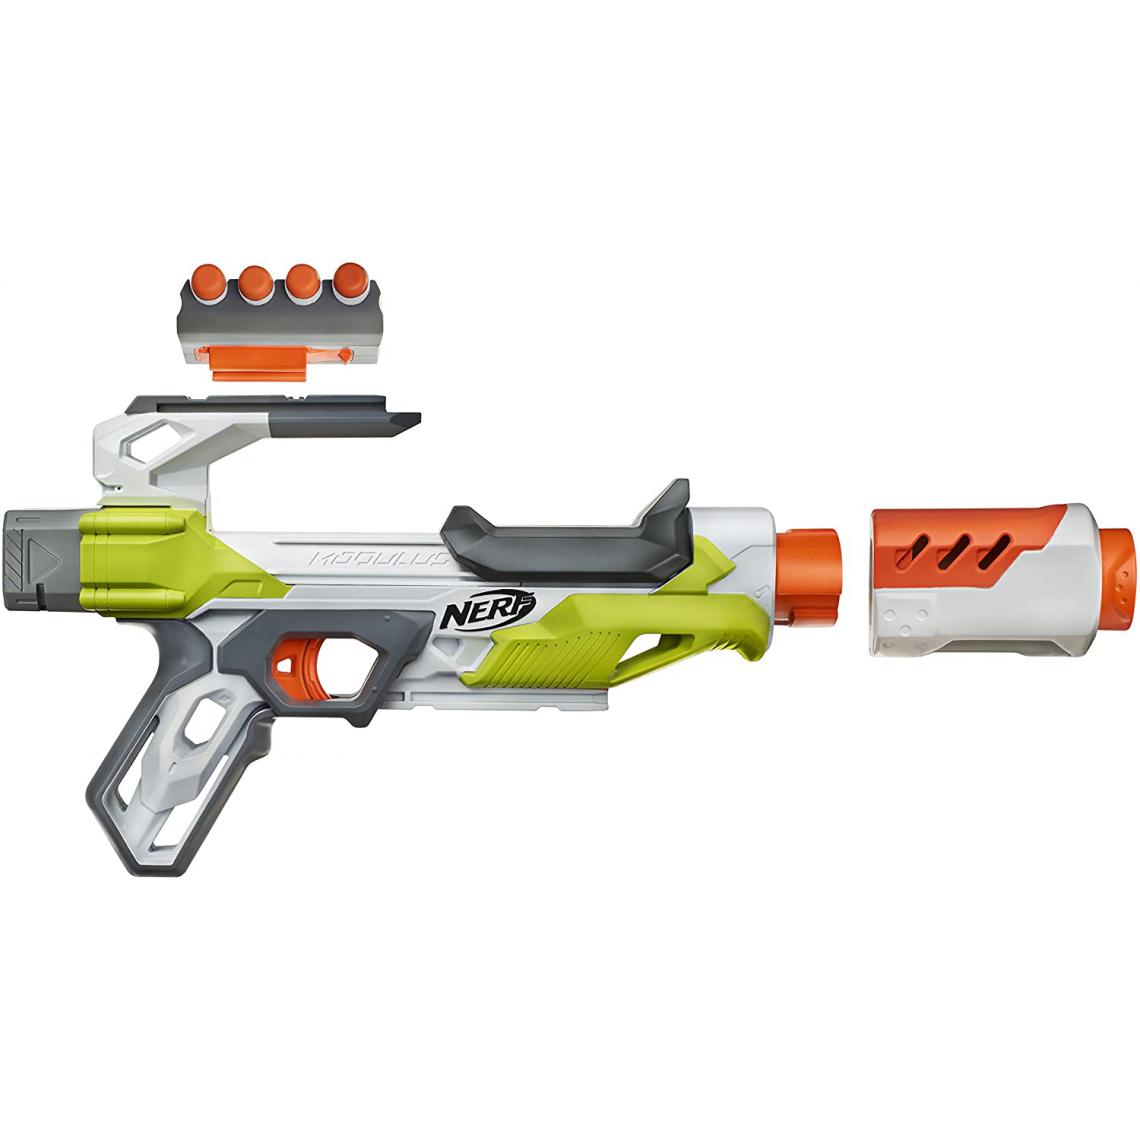 Nerf - pistolet élite Modulus Ion Fire blanc orange - Jeux d'adresse